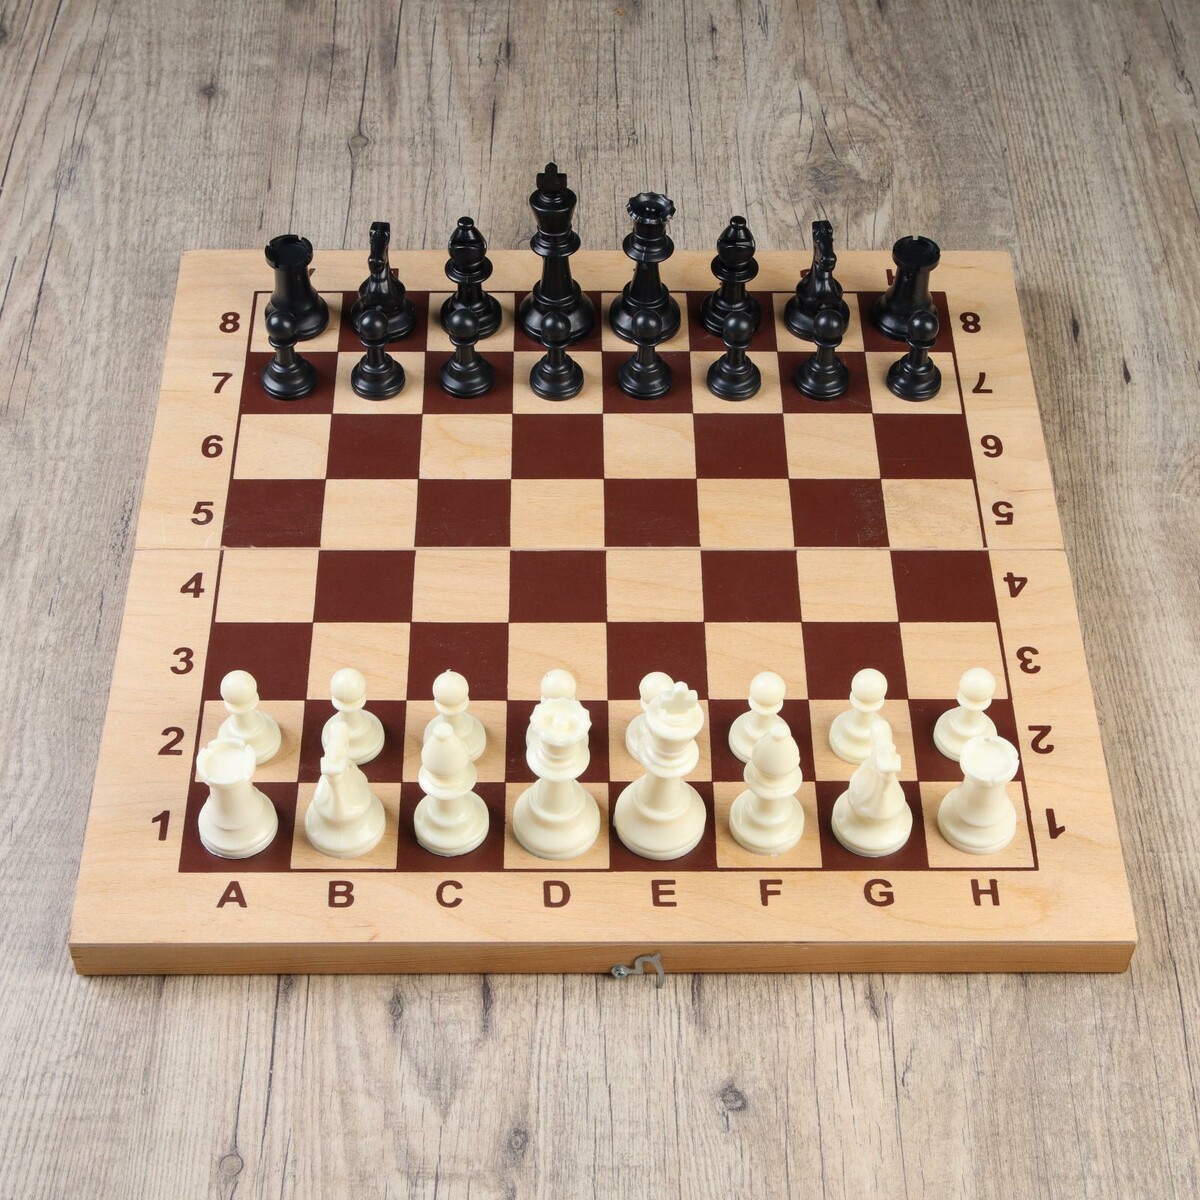 Шахматные фигуры, пластик, король h-9.5 см, пешка h-4.5 см голый король